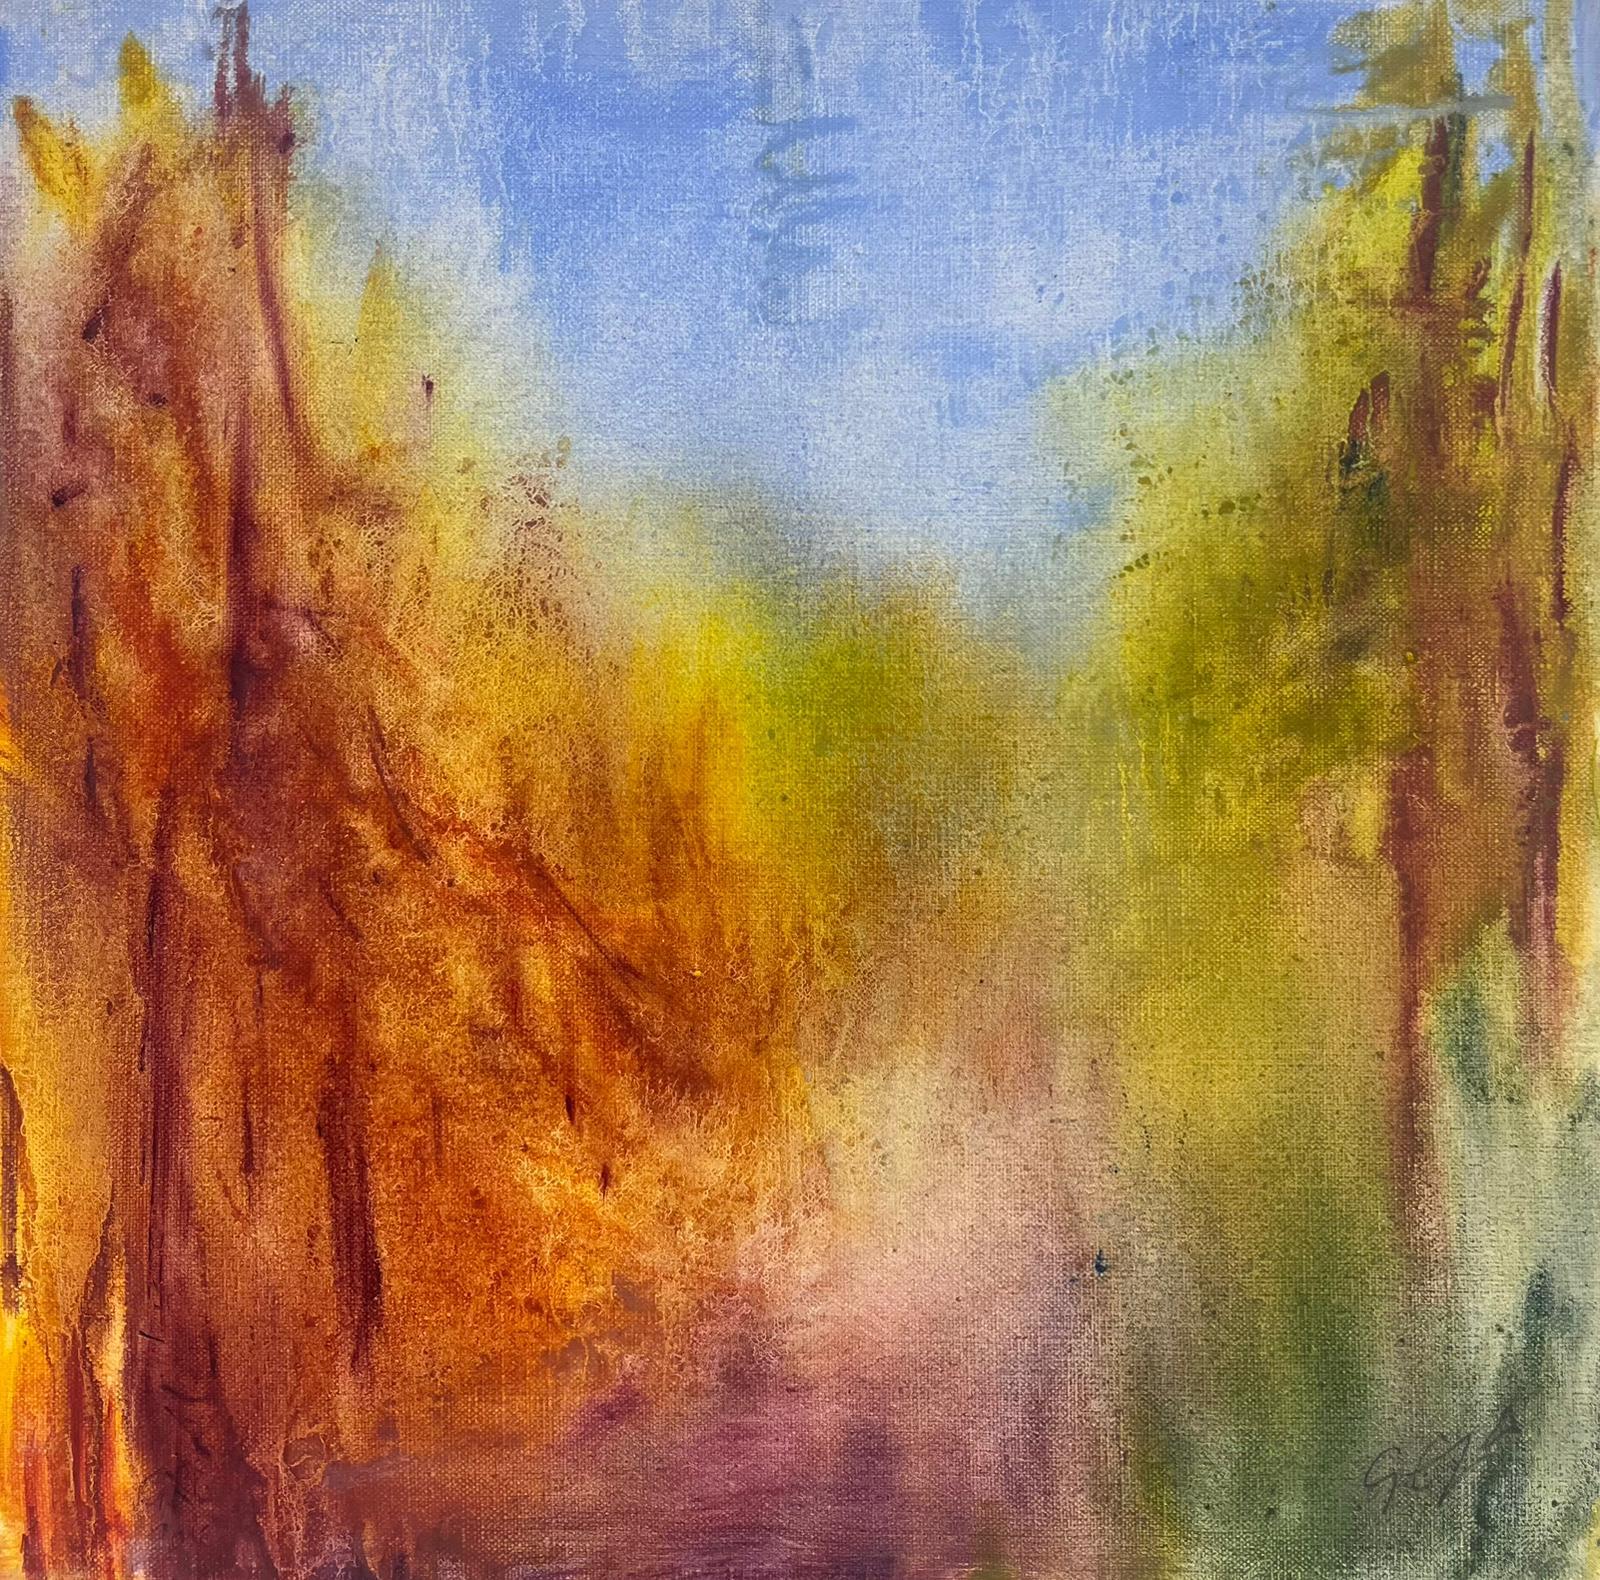 Landscape Painting Geza Somerset-Paddon - Blurry Bright Colourful Forest Contemporary British Oil Painting canvas (peinture à l'huile britannique floue et lumineuse)